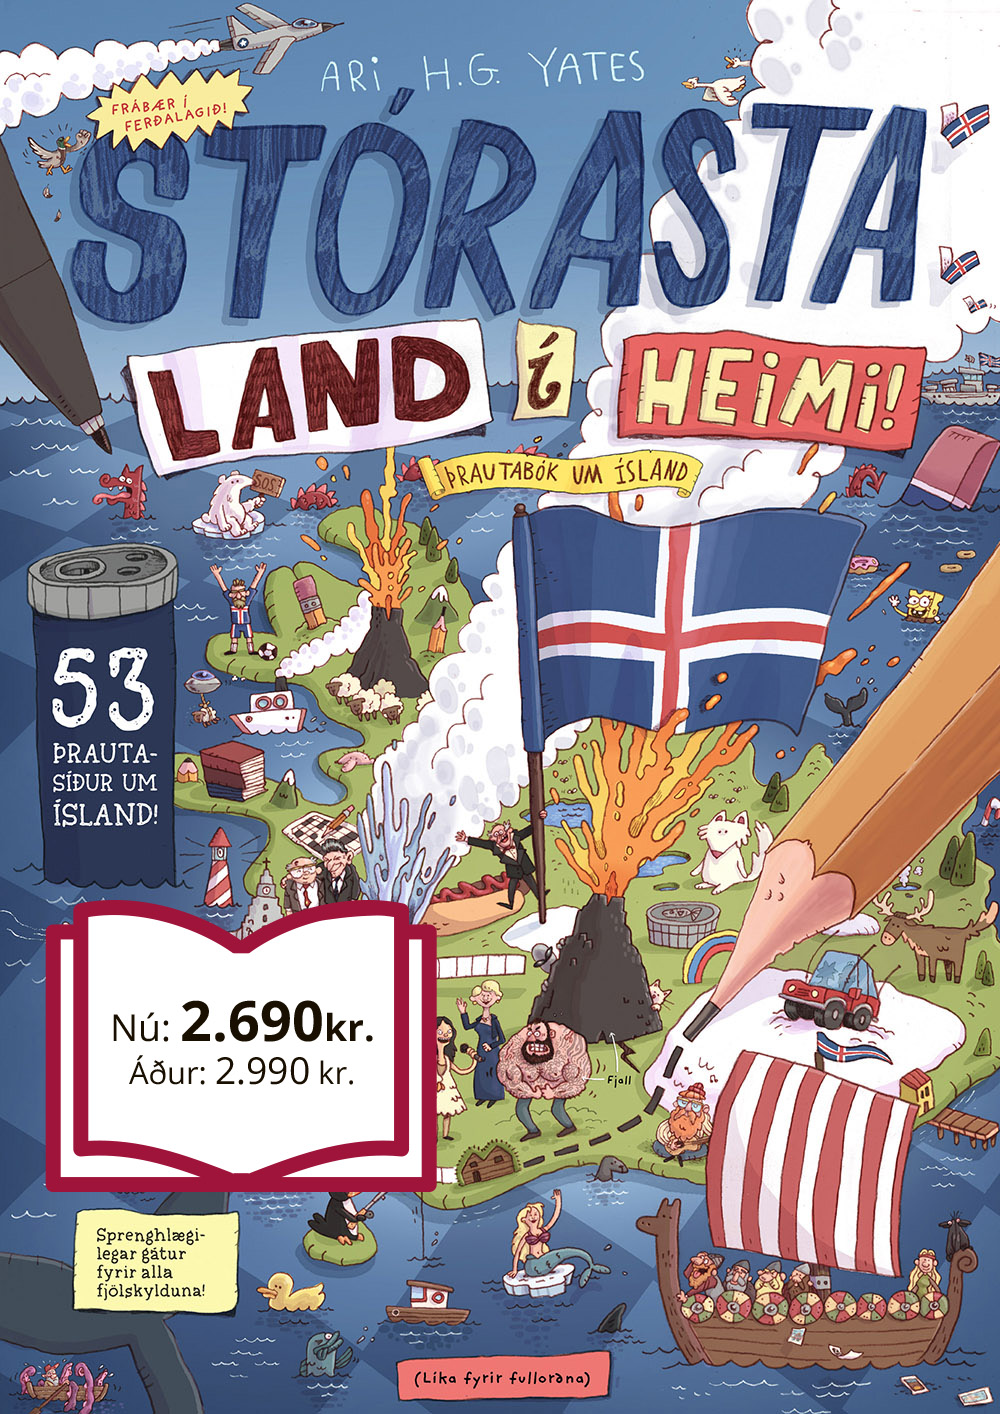 Stórasta land í heimi: Þrautabók um Ísland